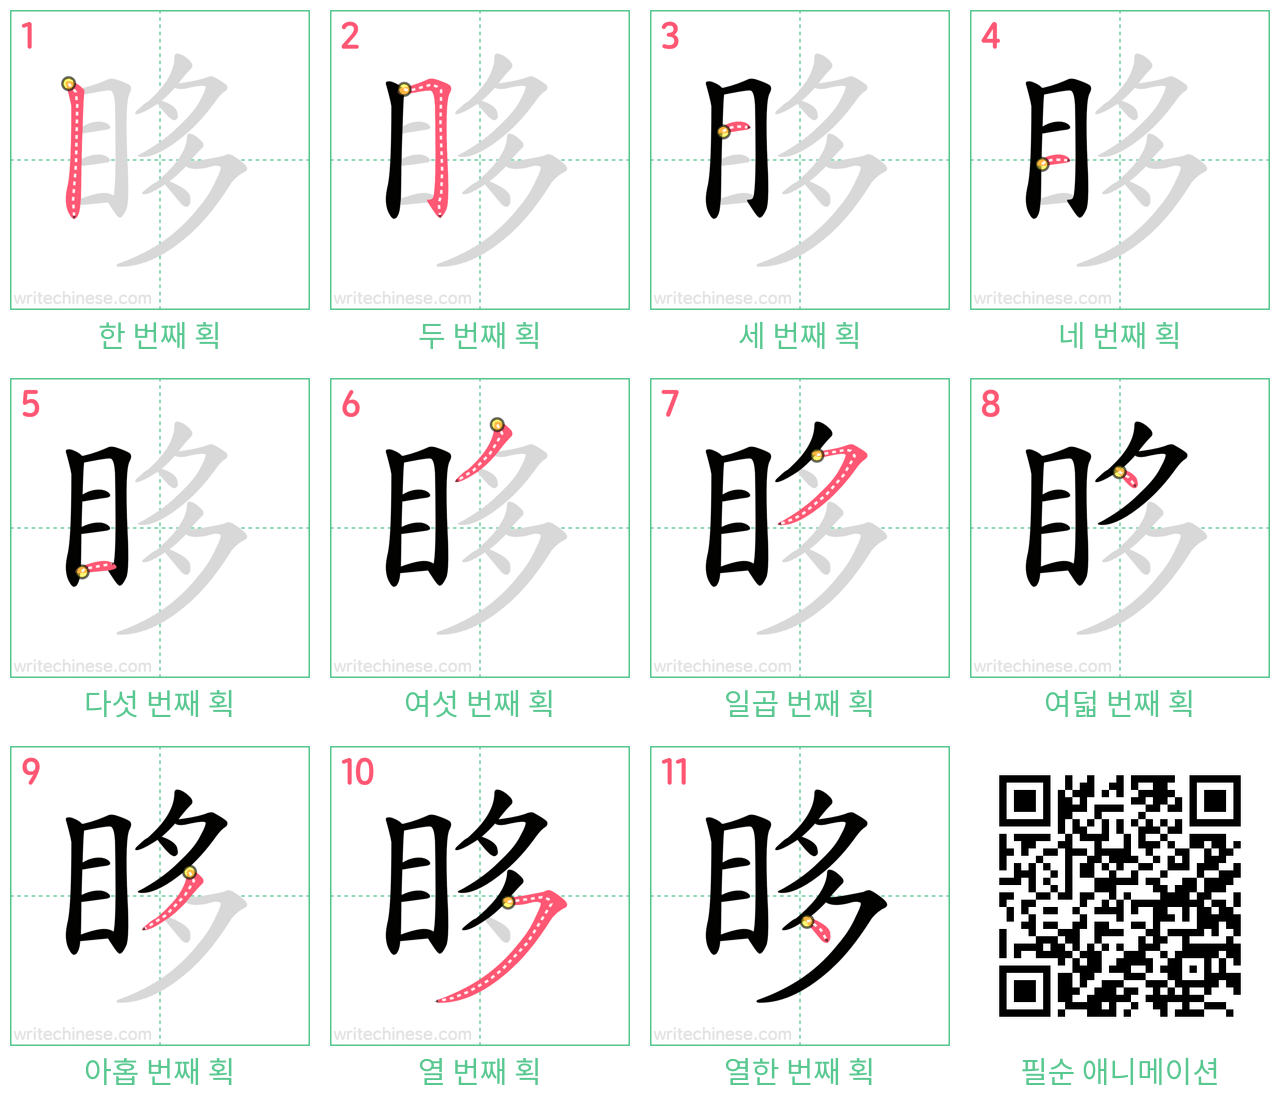 眵 step-by-step stroke order diagrams